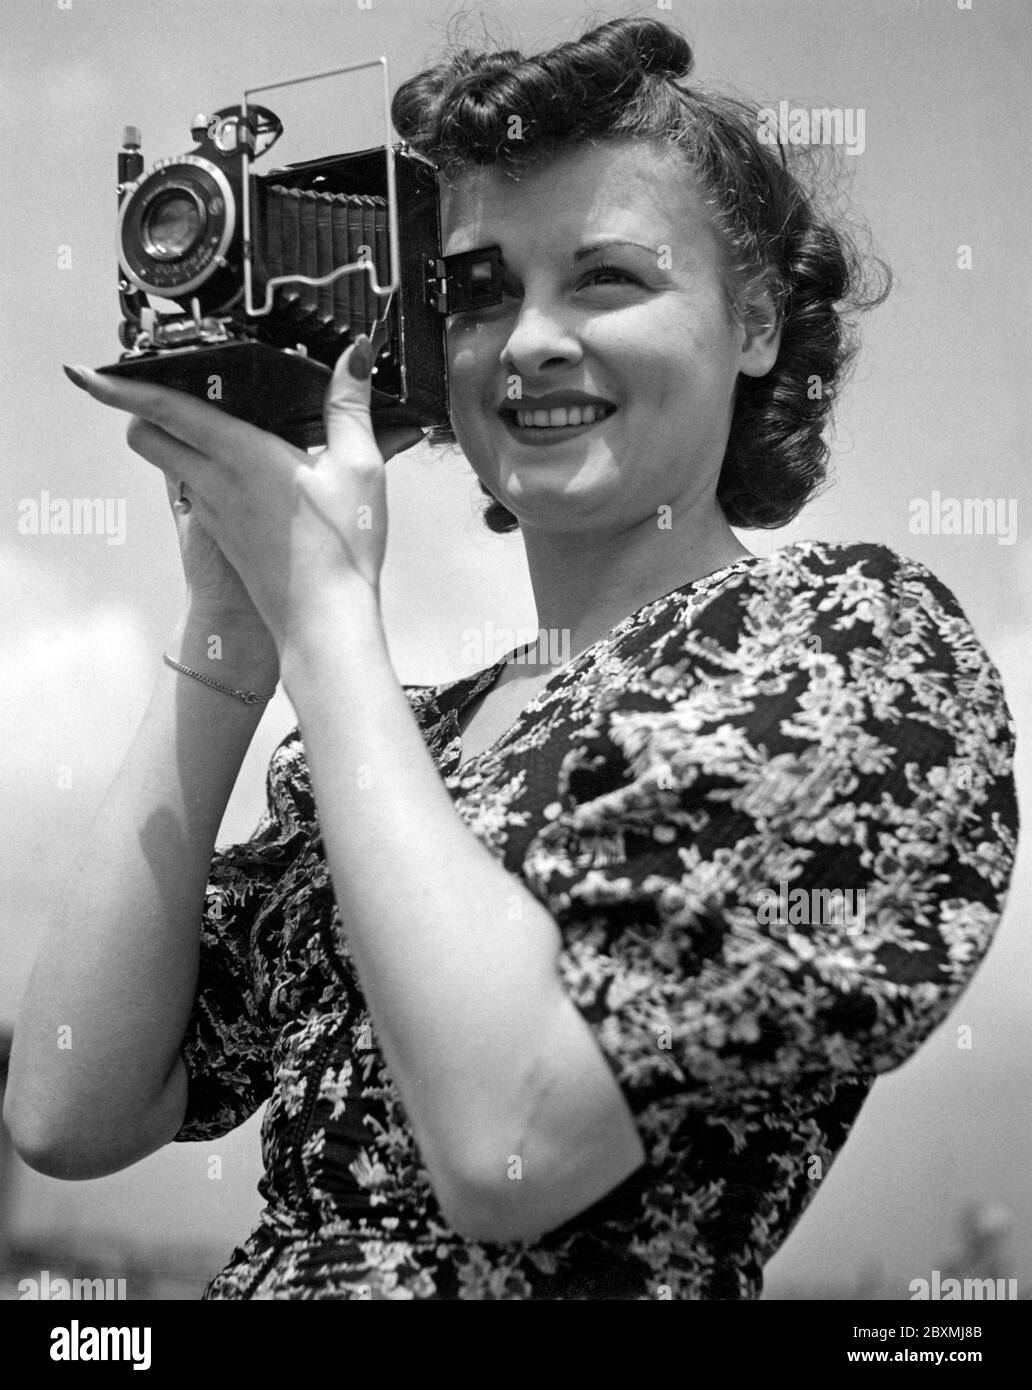 Amateurfotograf in den 1940er Jahren. Eine junge Frau fotografiert an einem Sommertag. Das Kameramodell ist praktisch. Wenn Sie es nicht verwenden, werden die Linse und der Balg in das Kameragehäuse gefaltet. Um Bilder aufzunehmen, haben Sie es geöffnet und waren bereit zu gehen. Die Kamera produzierte analogen Film. Stockfoto